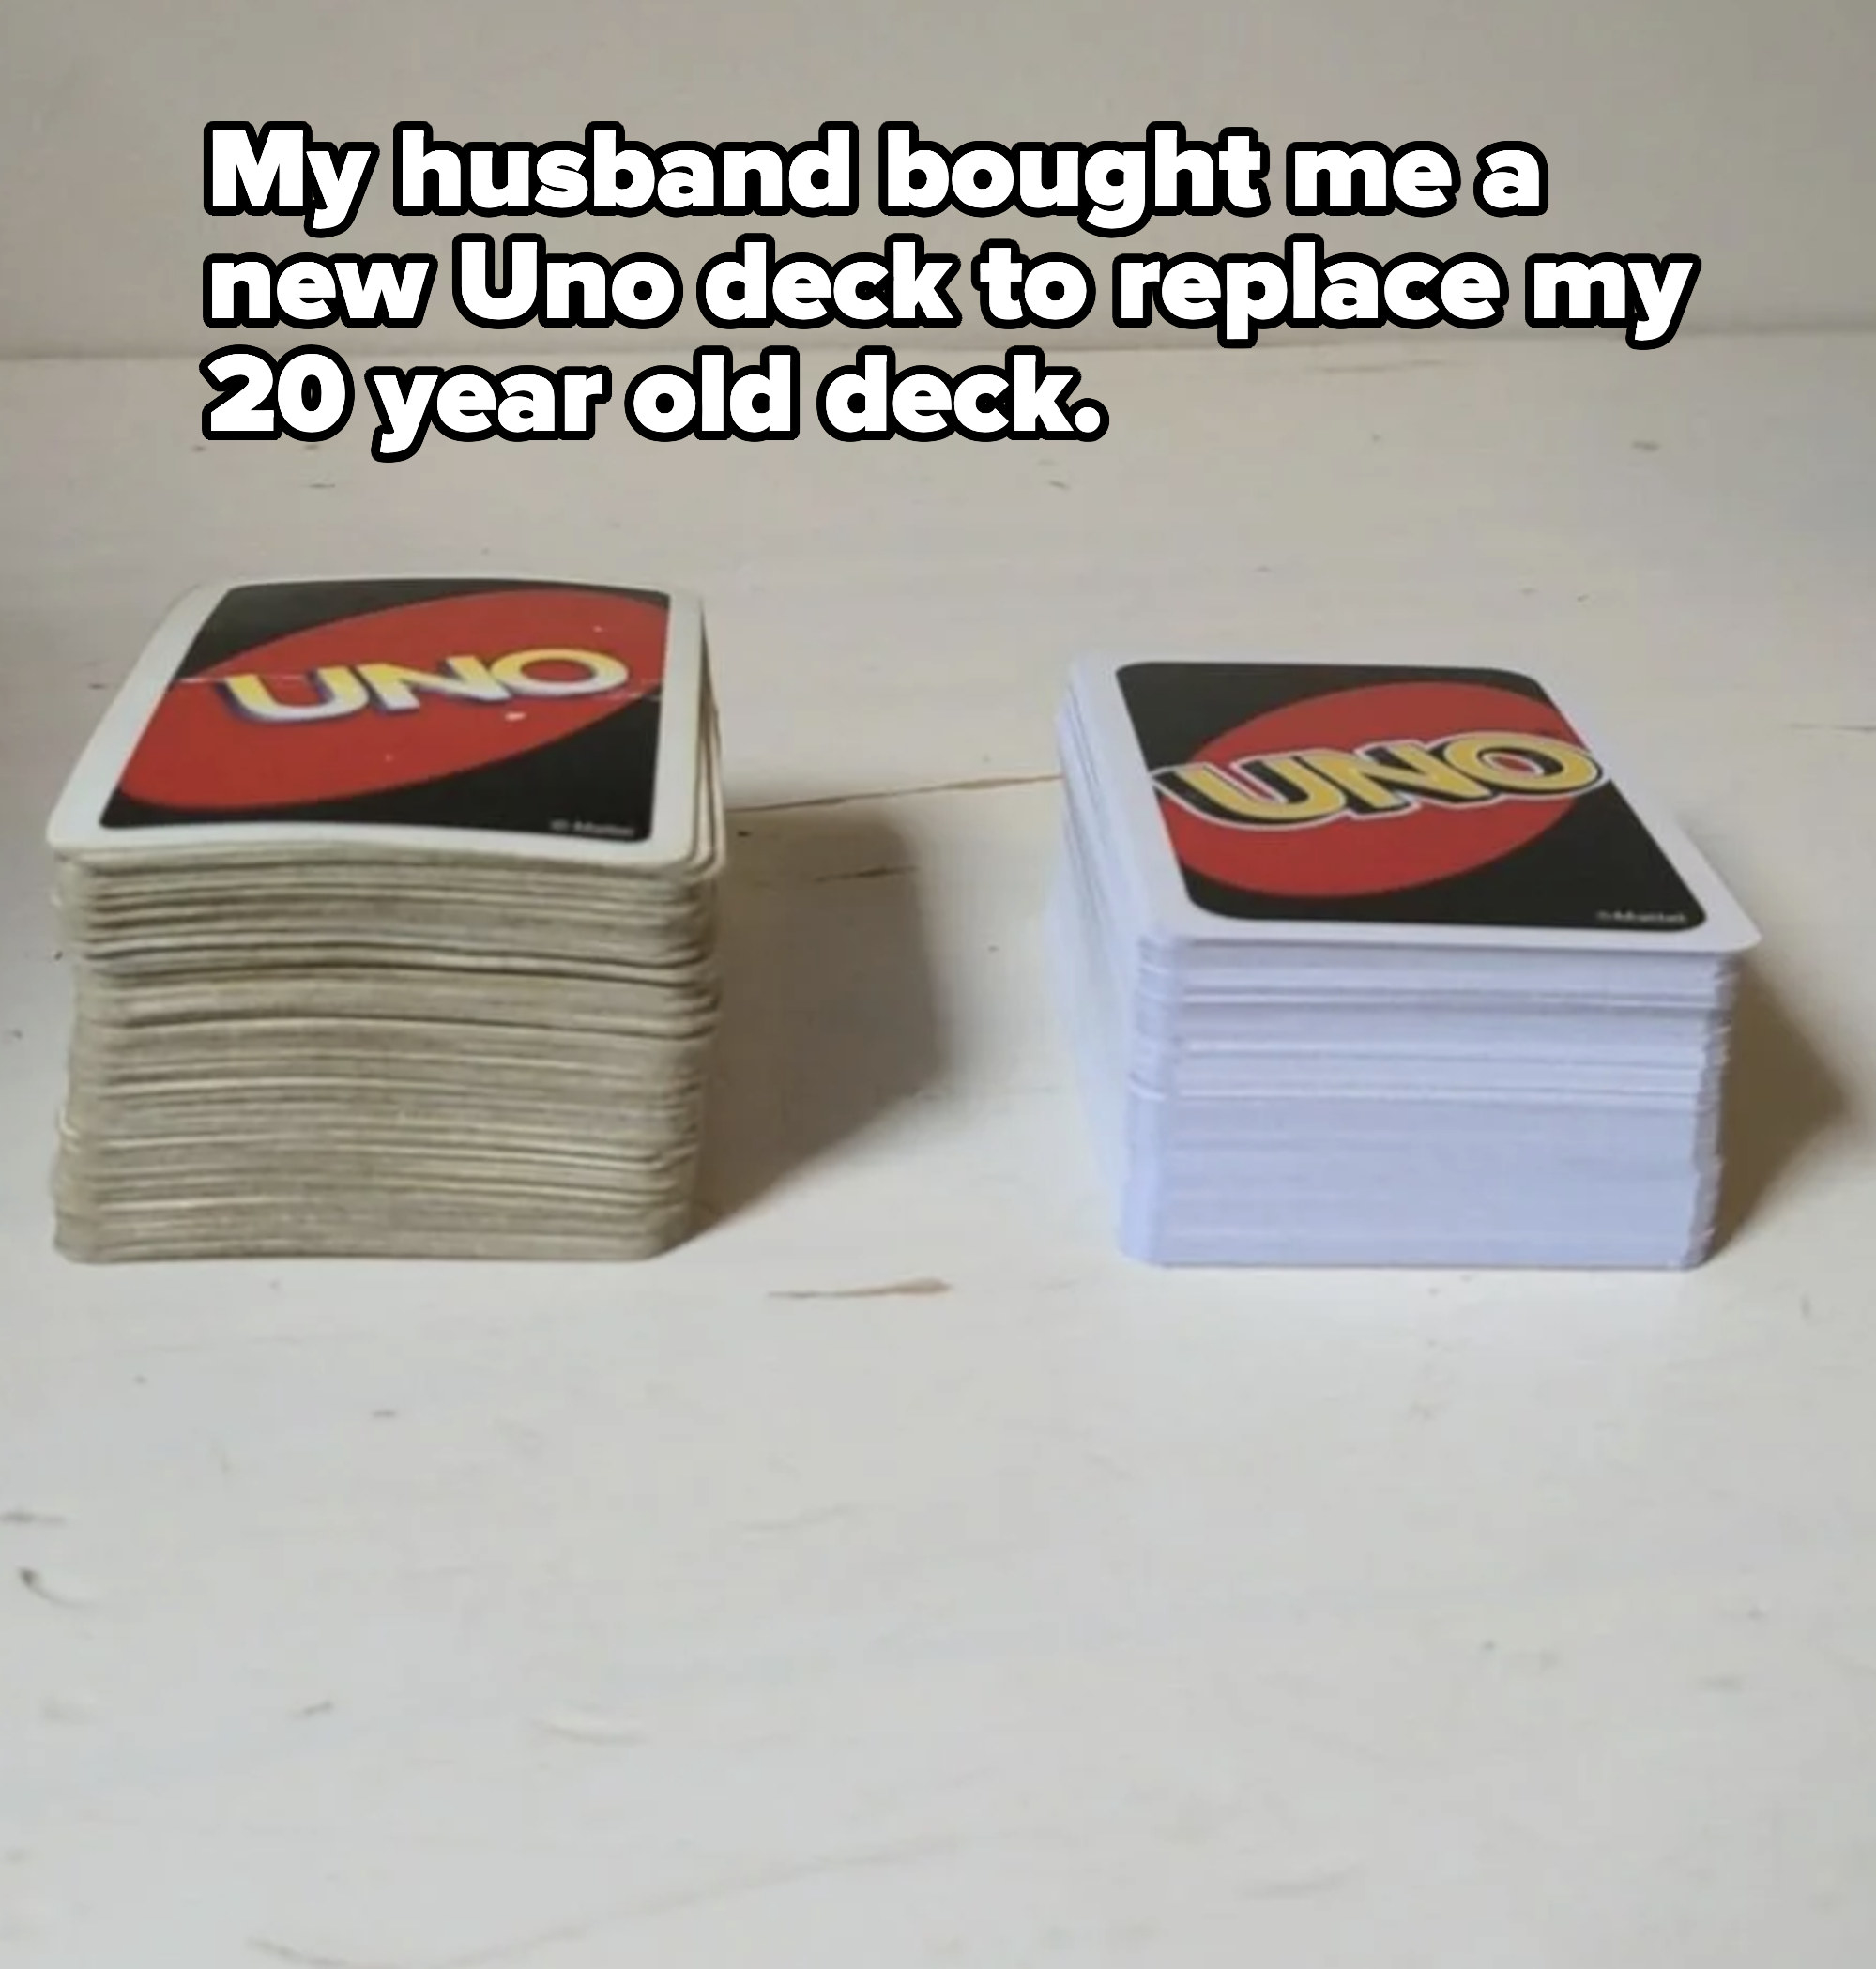 Two Uno decks